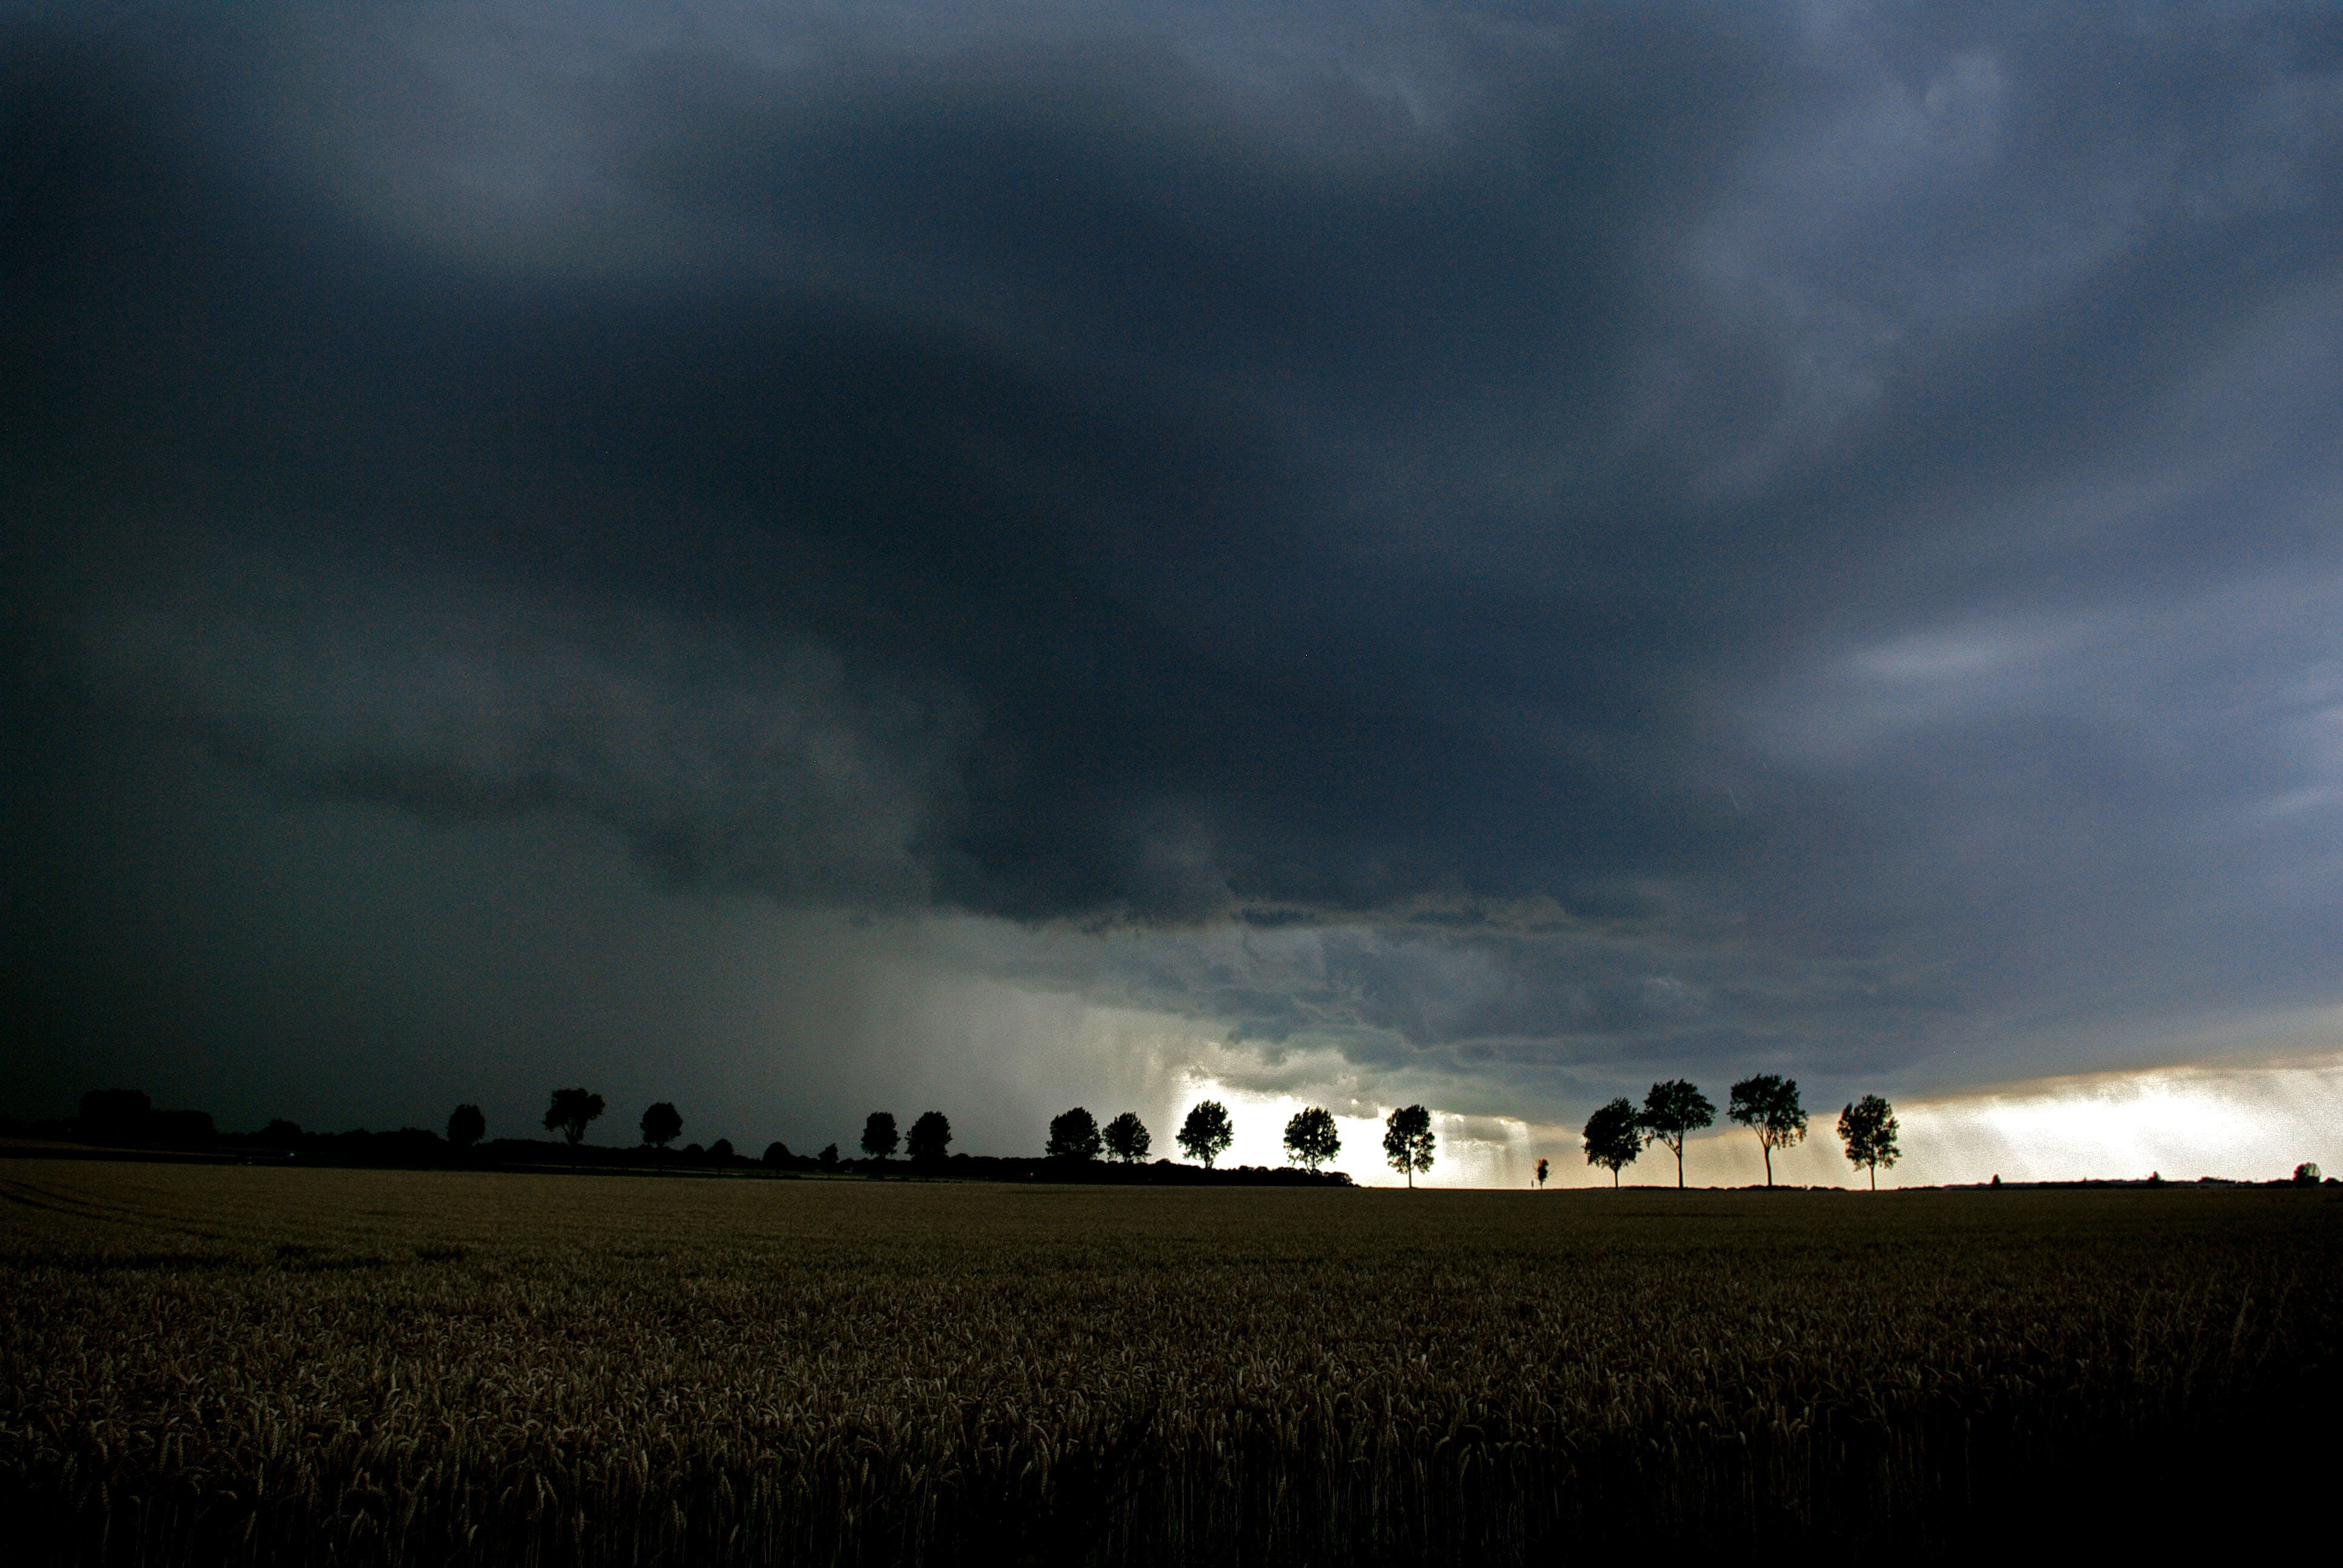 Arrivée de la supercellule orageuse dans l'Audomarois (62) avec l'arcus bien visible sur la gauche, ainsi que les grosses précipitations de pluie et de grêle qui s'en suivent. - 06/07/2017 18:00 - Kévin Dubois